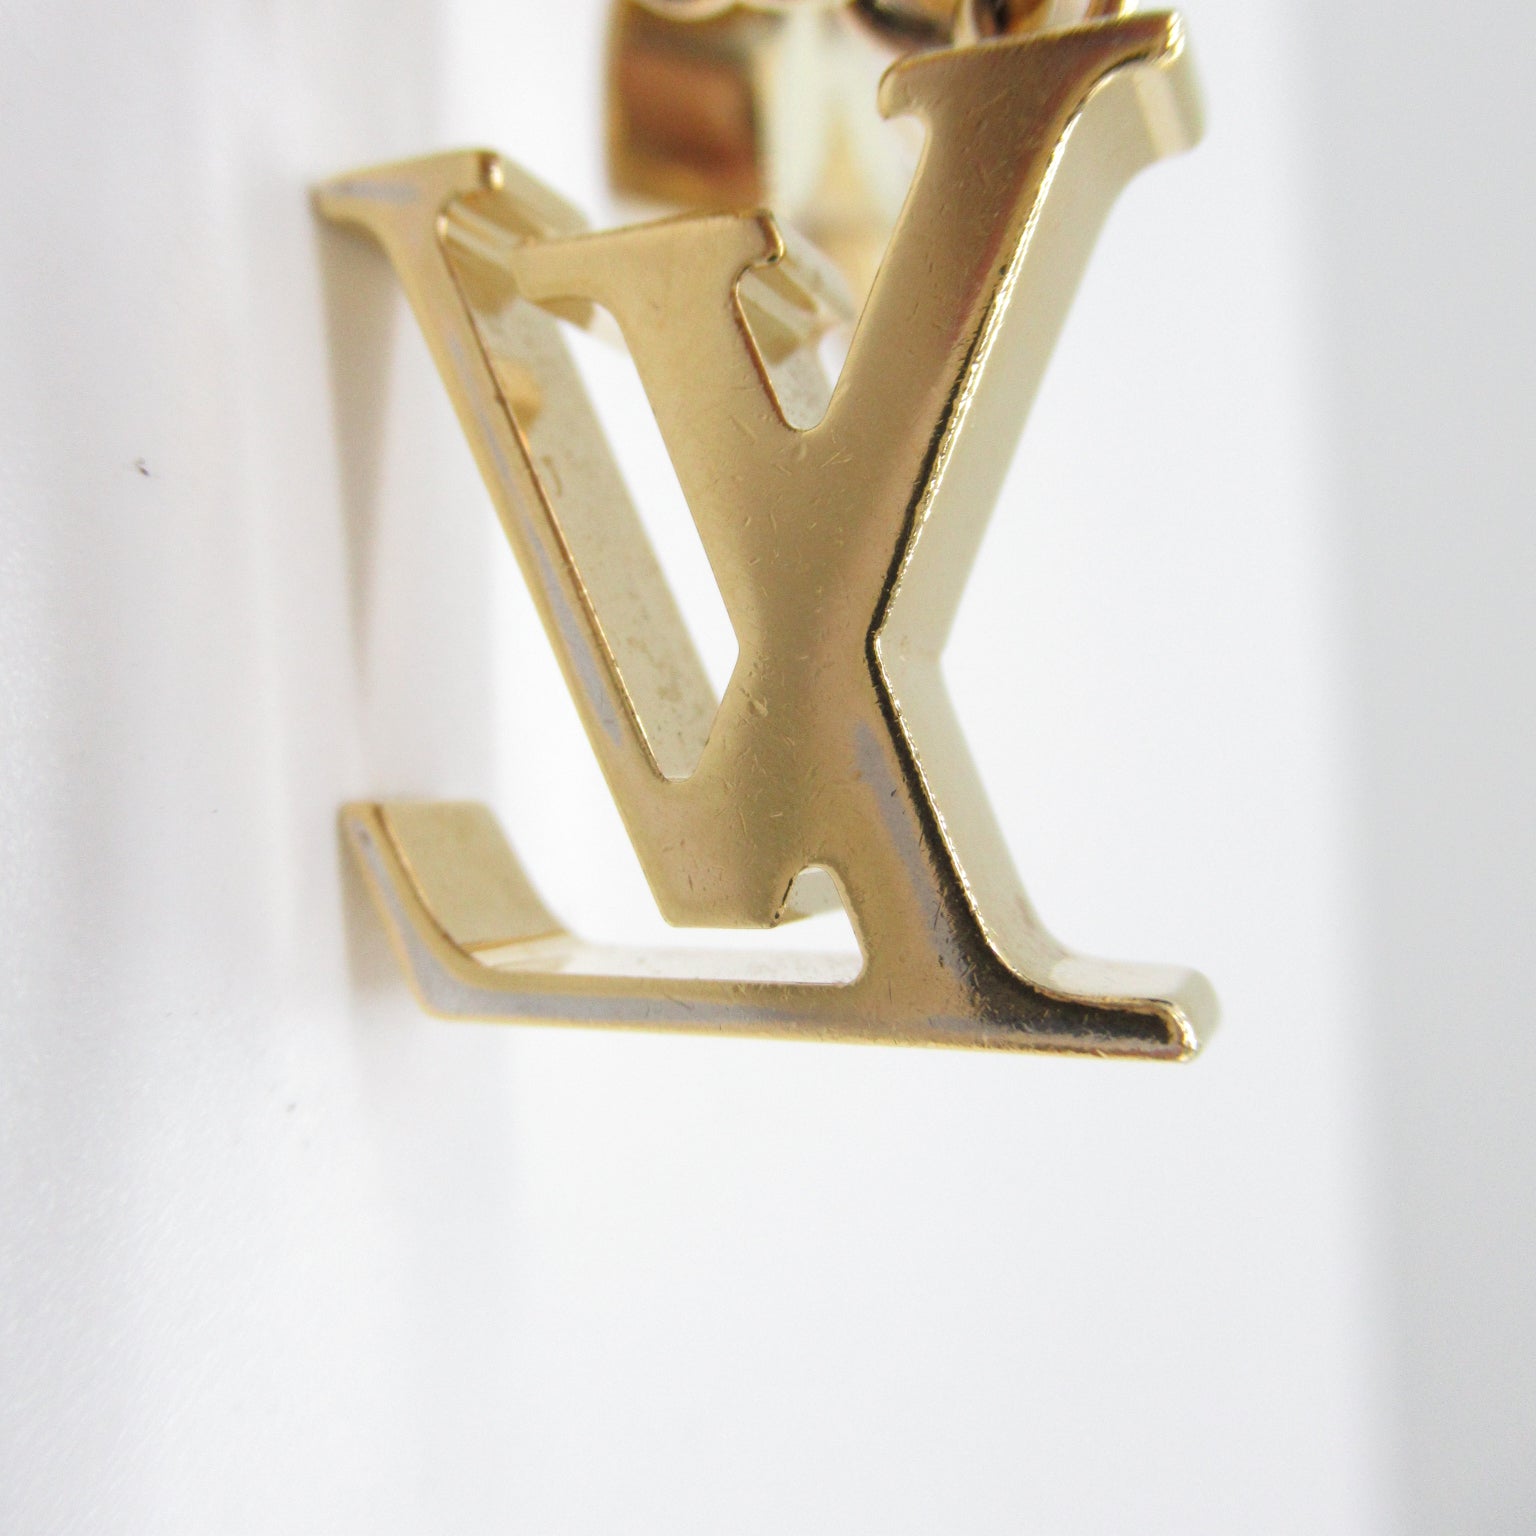 Louis Vuitton Louis Vuitton Fully Monogram Keyher Accessoires GP (Golden Mask)   Gold  M65111